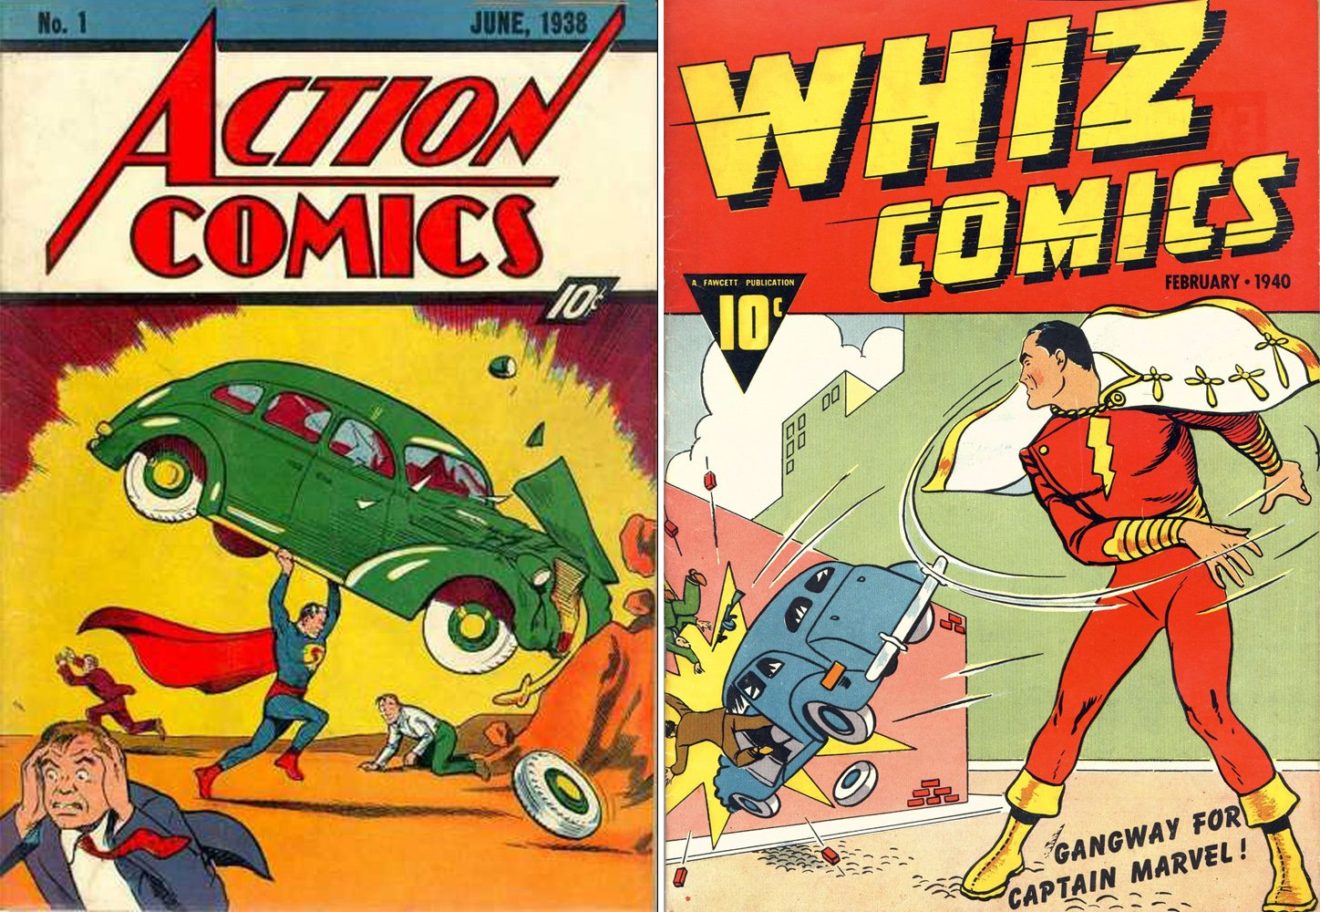 Image 6 : Shazam! : on vous dit tout sur le héros drôle et bardé de super-pouvoirs